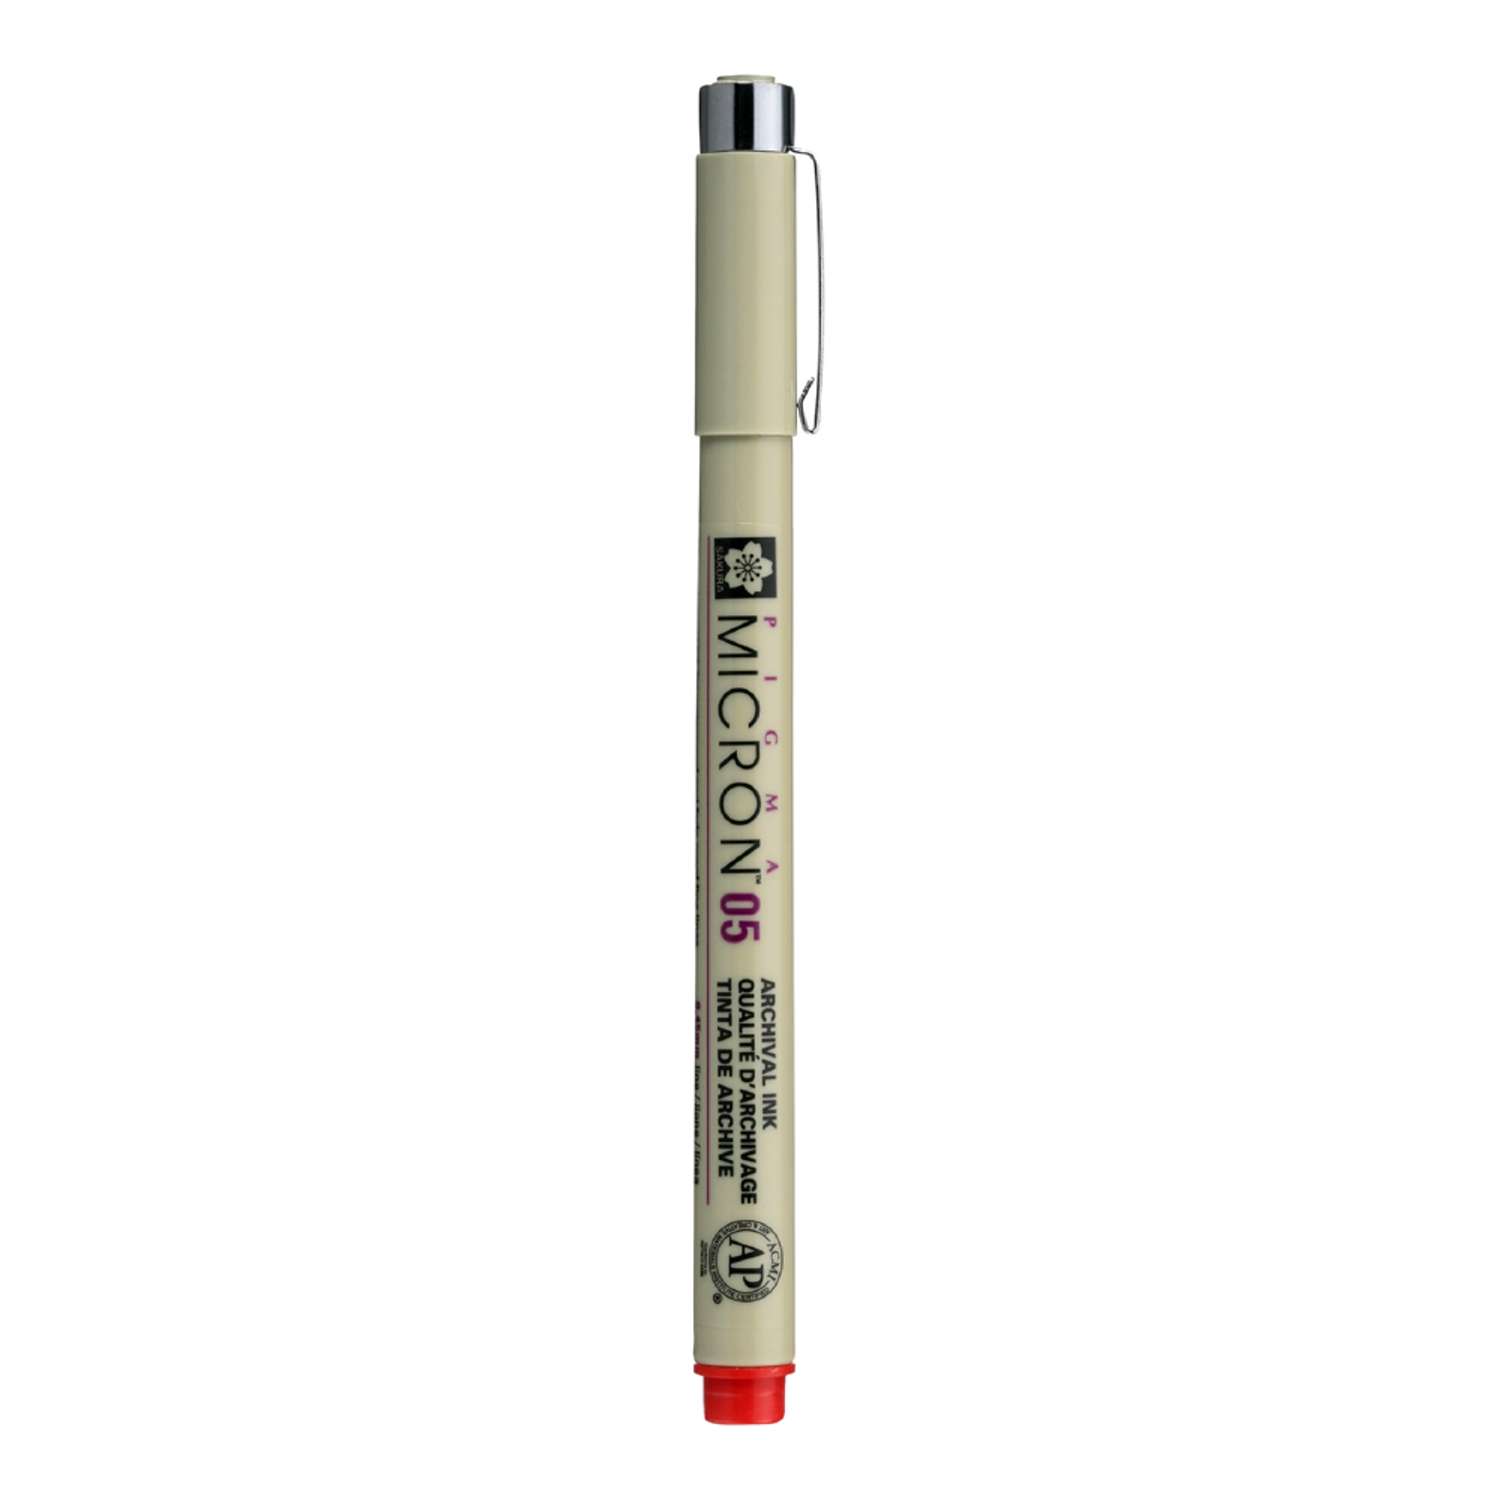 Ручка капиллярная Sakura Pigma Micron 05 цвет чернил: красный - фото 1